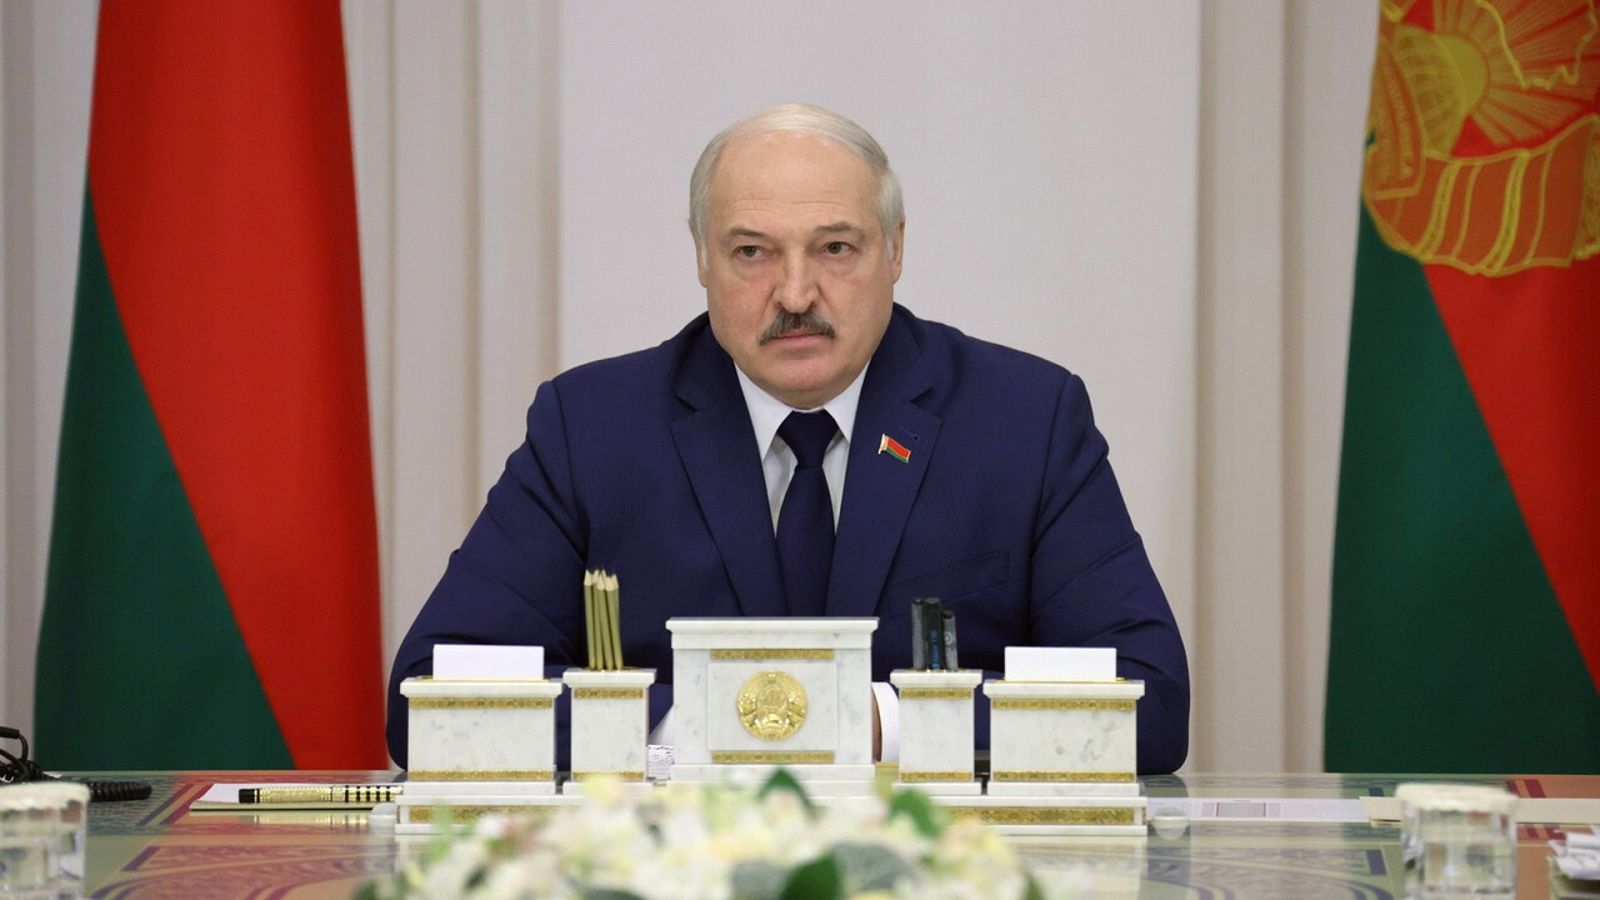 El presidente de Bielorrusia, Alexandr Lukashenko, en una reunión del Consejo de Ministros en Minsk, este jueves. Nikolai Petrov/BelTA/via REUTERS 